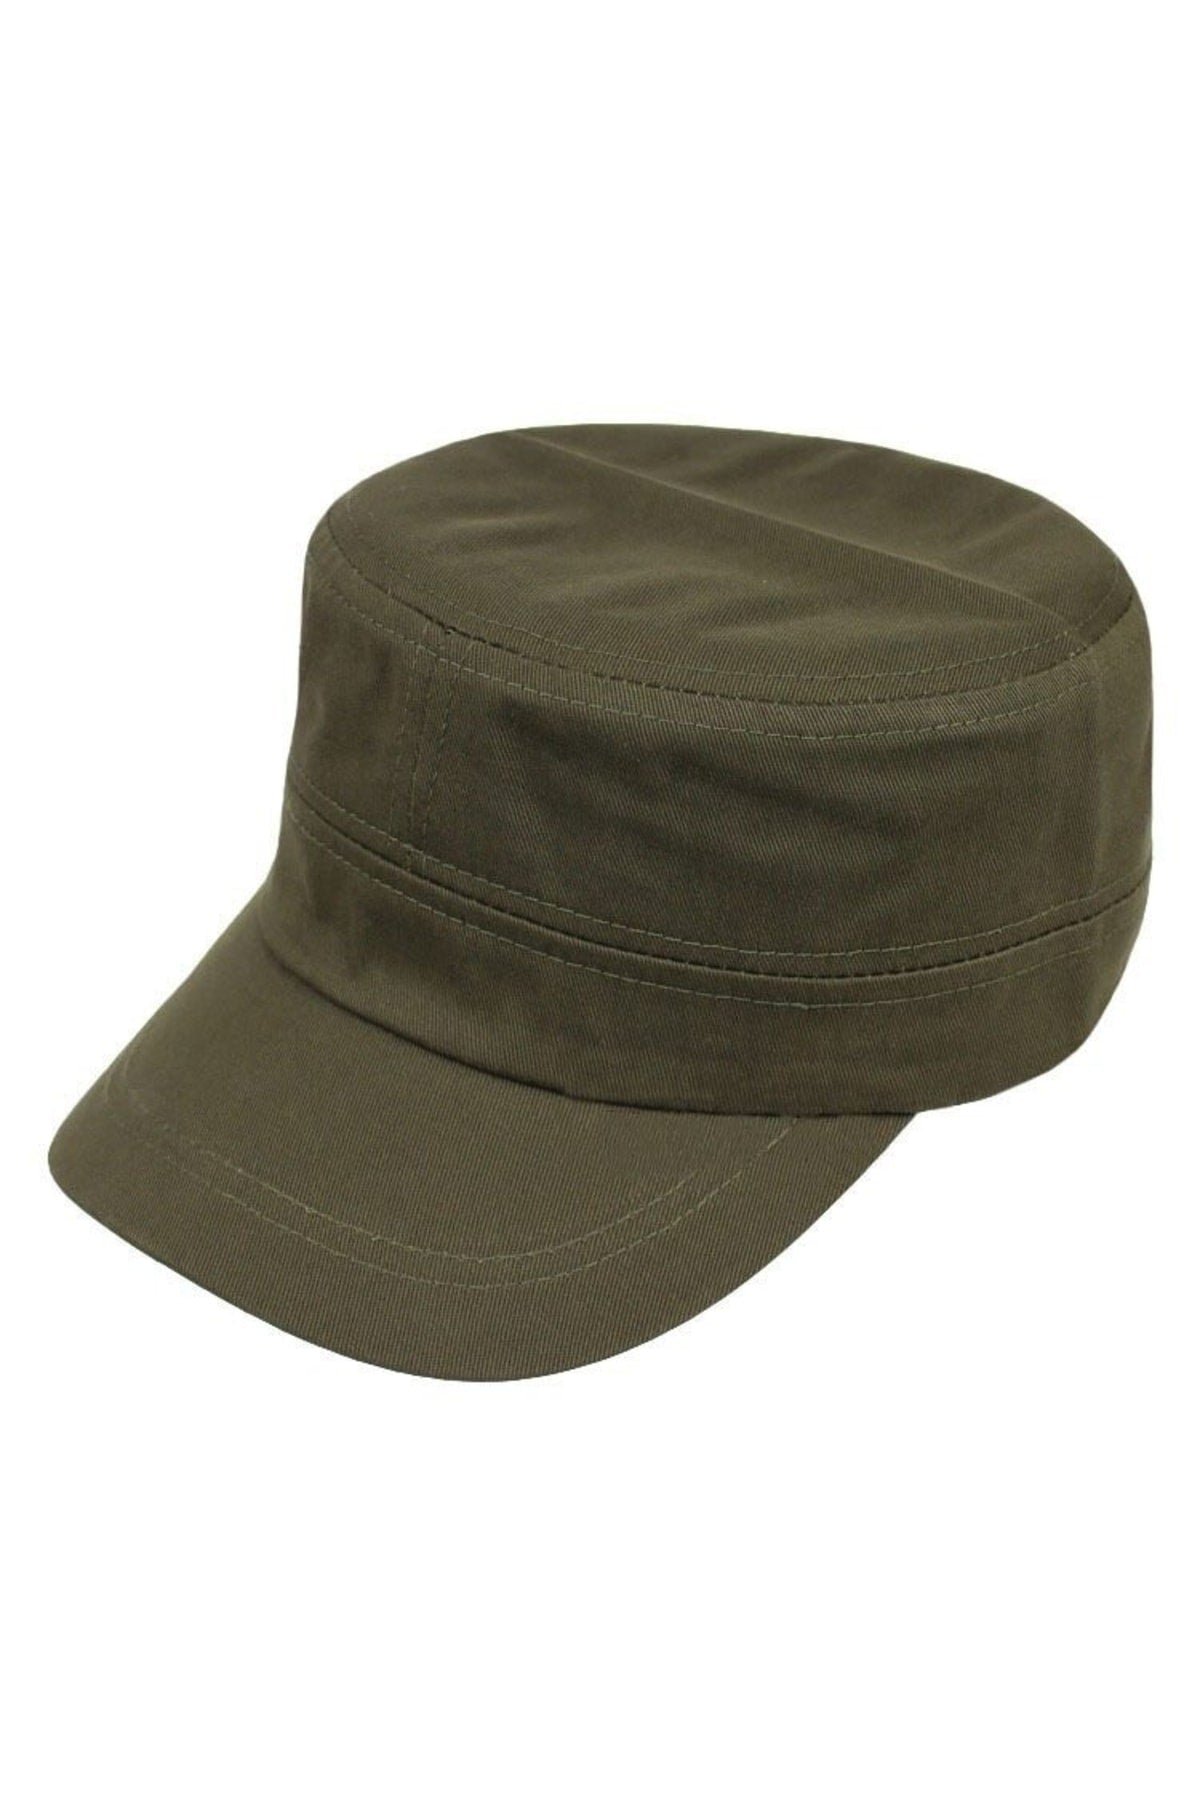 Men's Castro Hat Cap Khaki Outdoor Style Cap Castro Hat Unisex